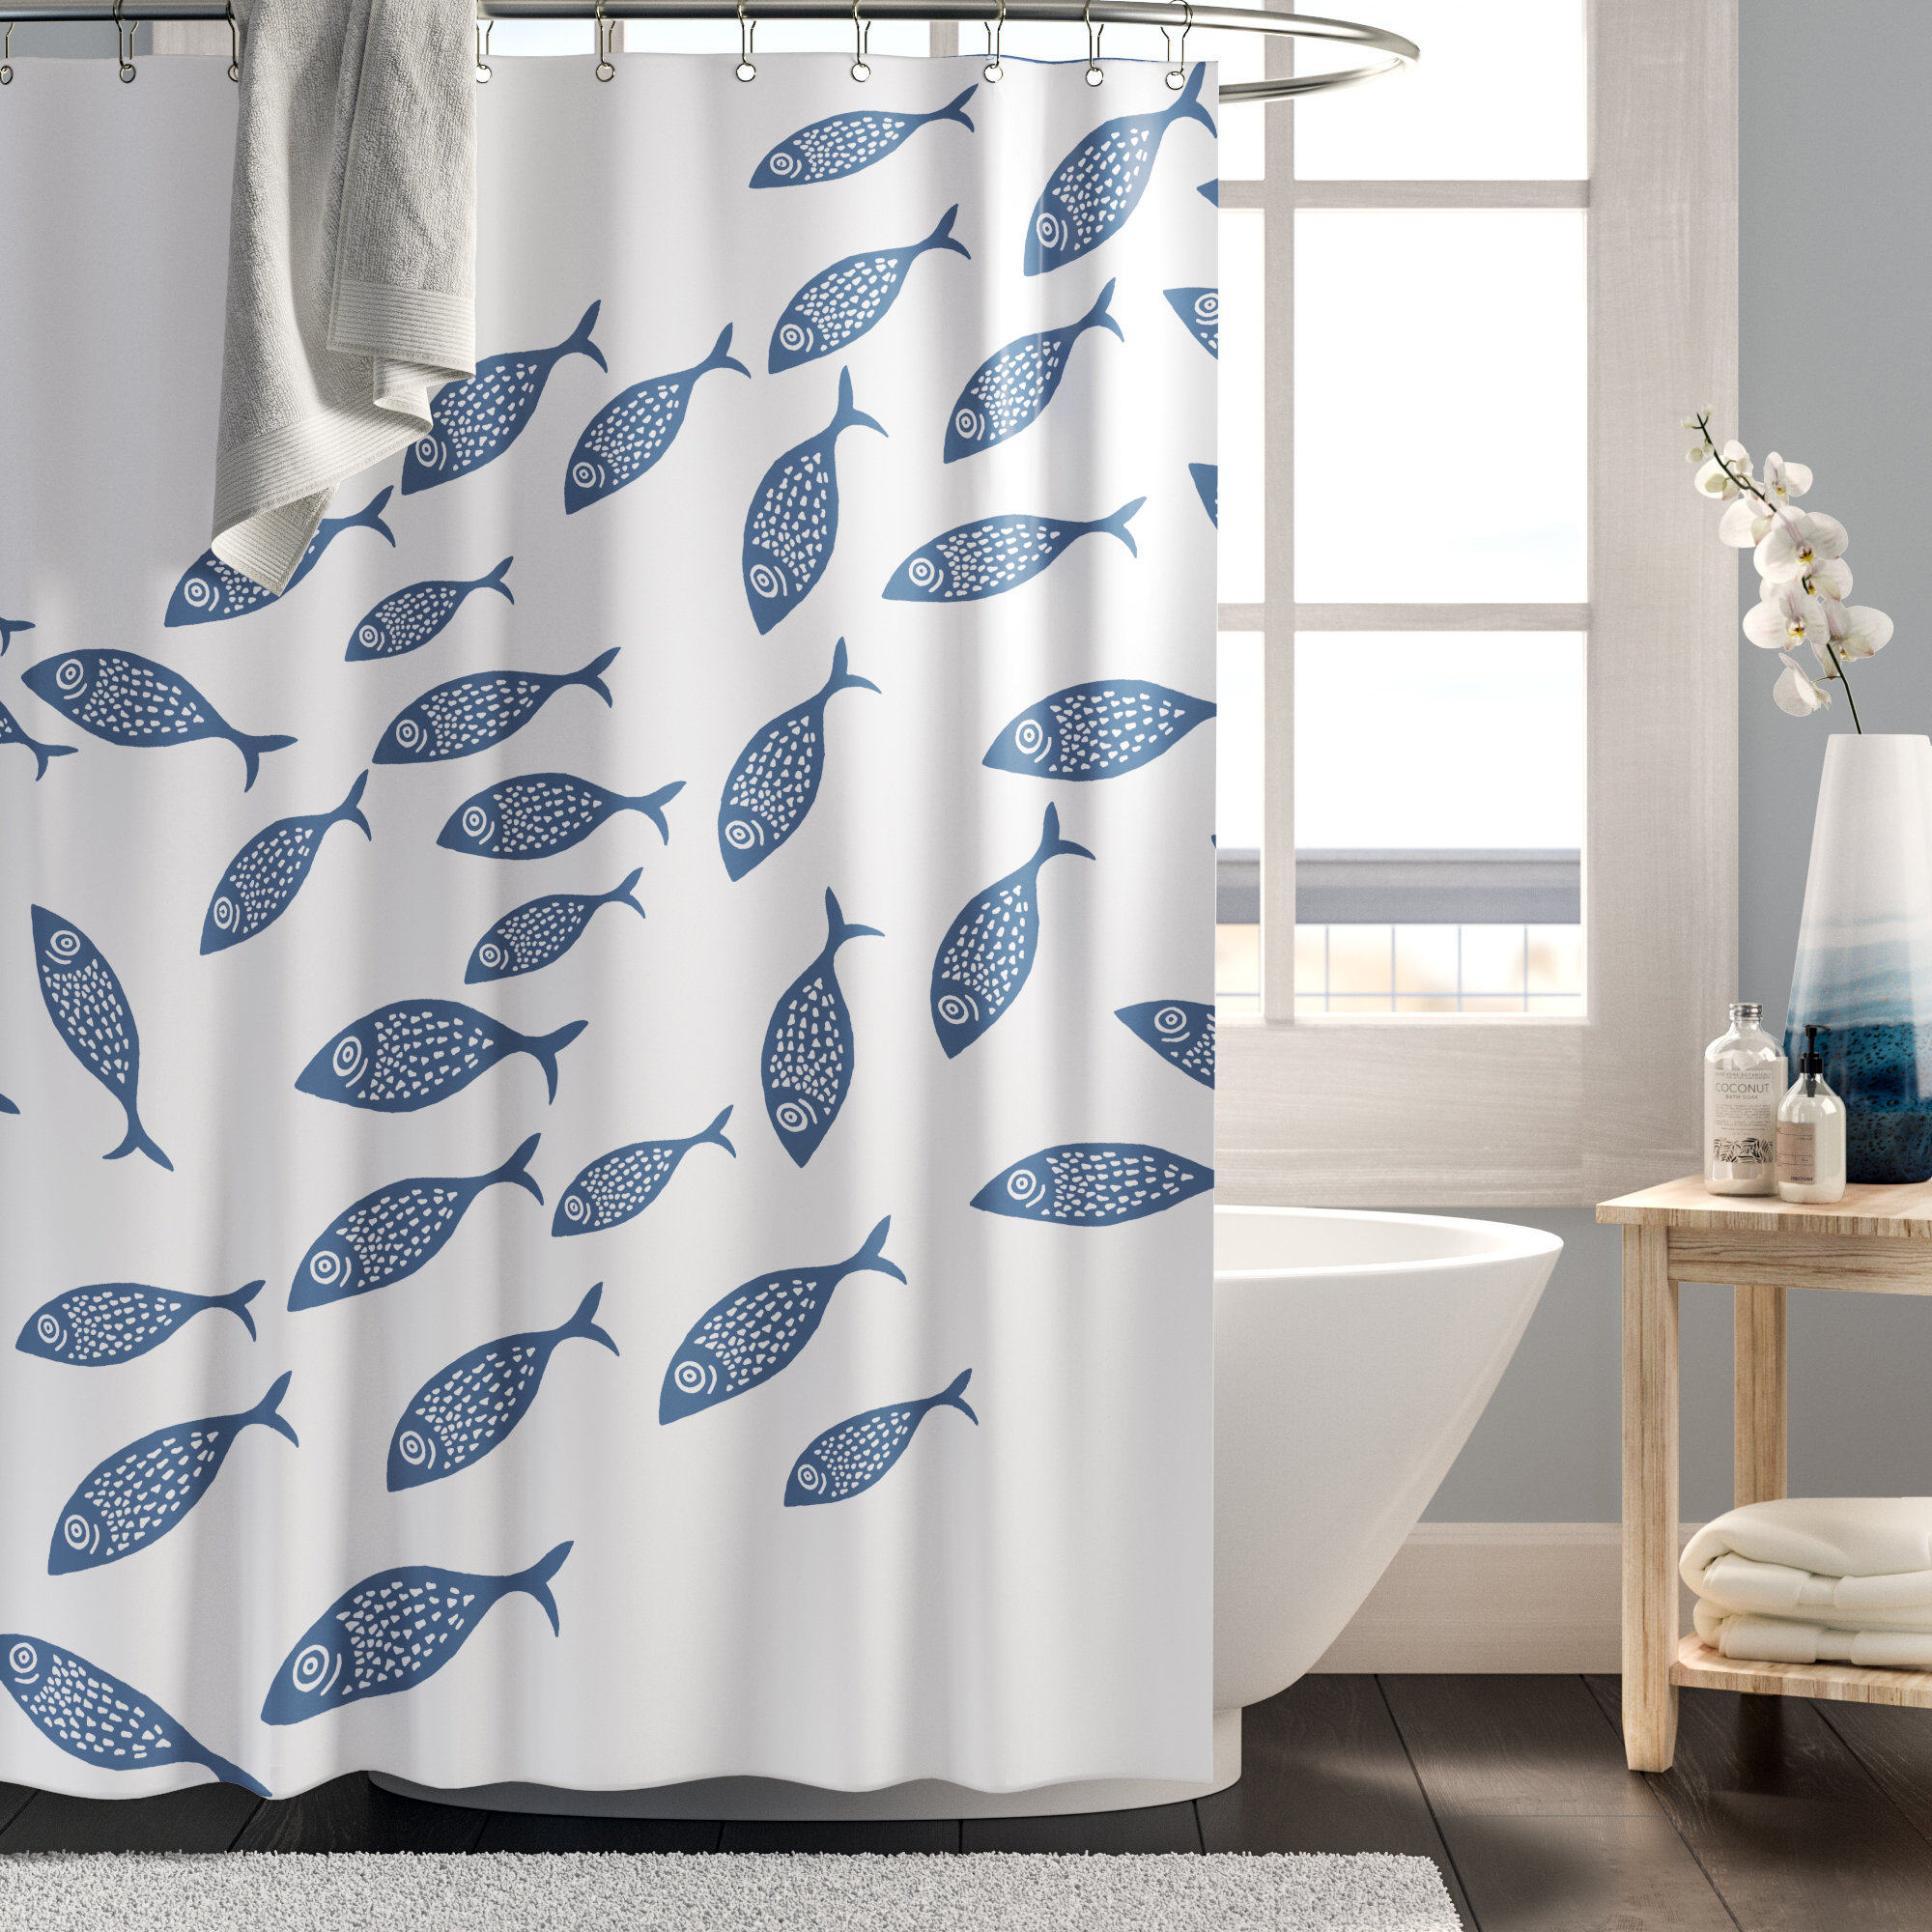 71" Desert Oasis Waterproof Home Bathroom Curtains Shower Curtains Bath Mat Set 